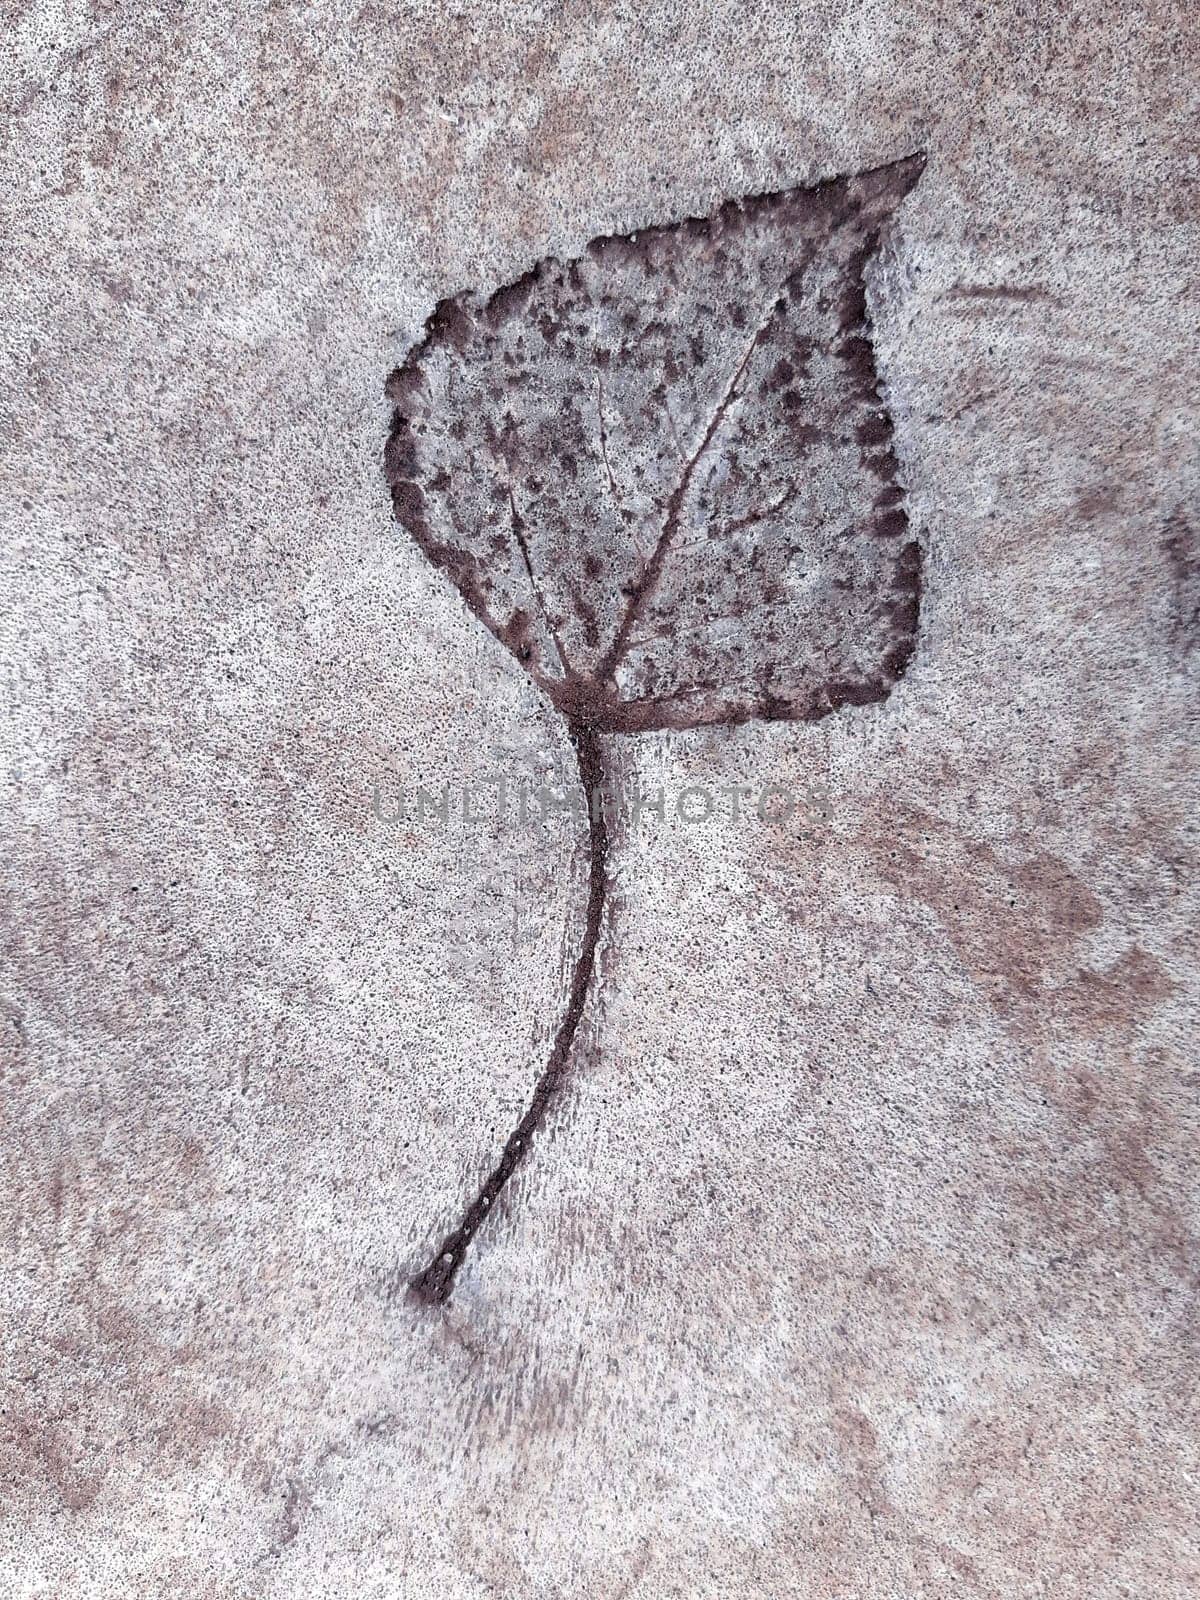 Fallen leaf print on concrete by Endusik